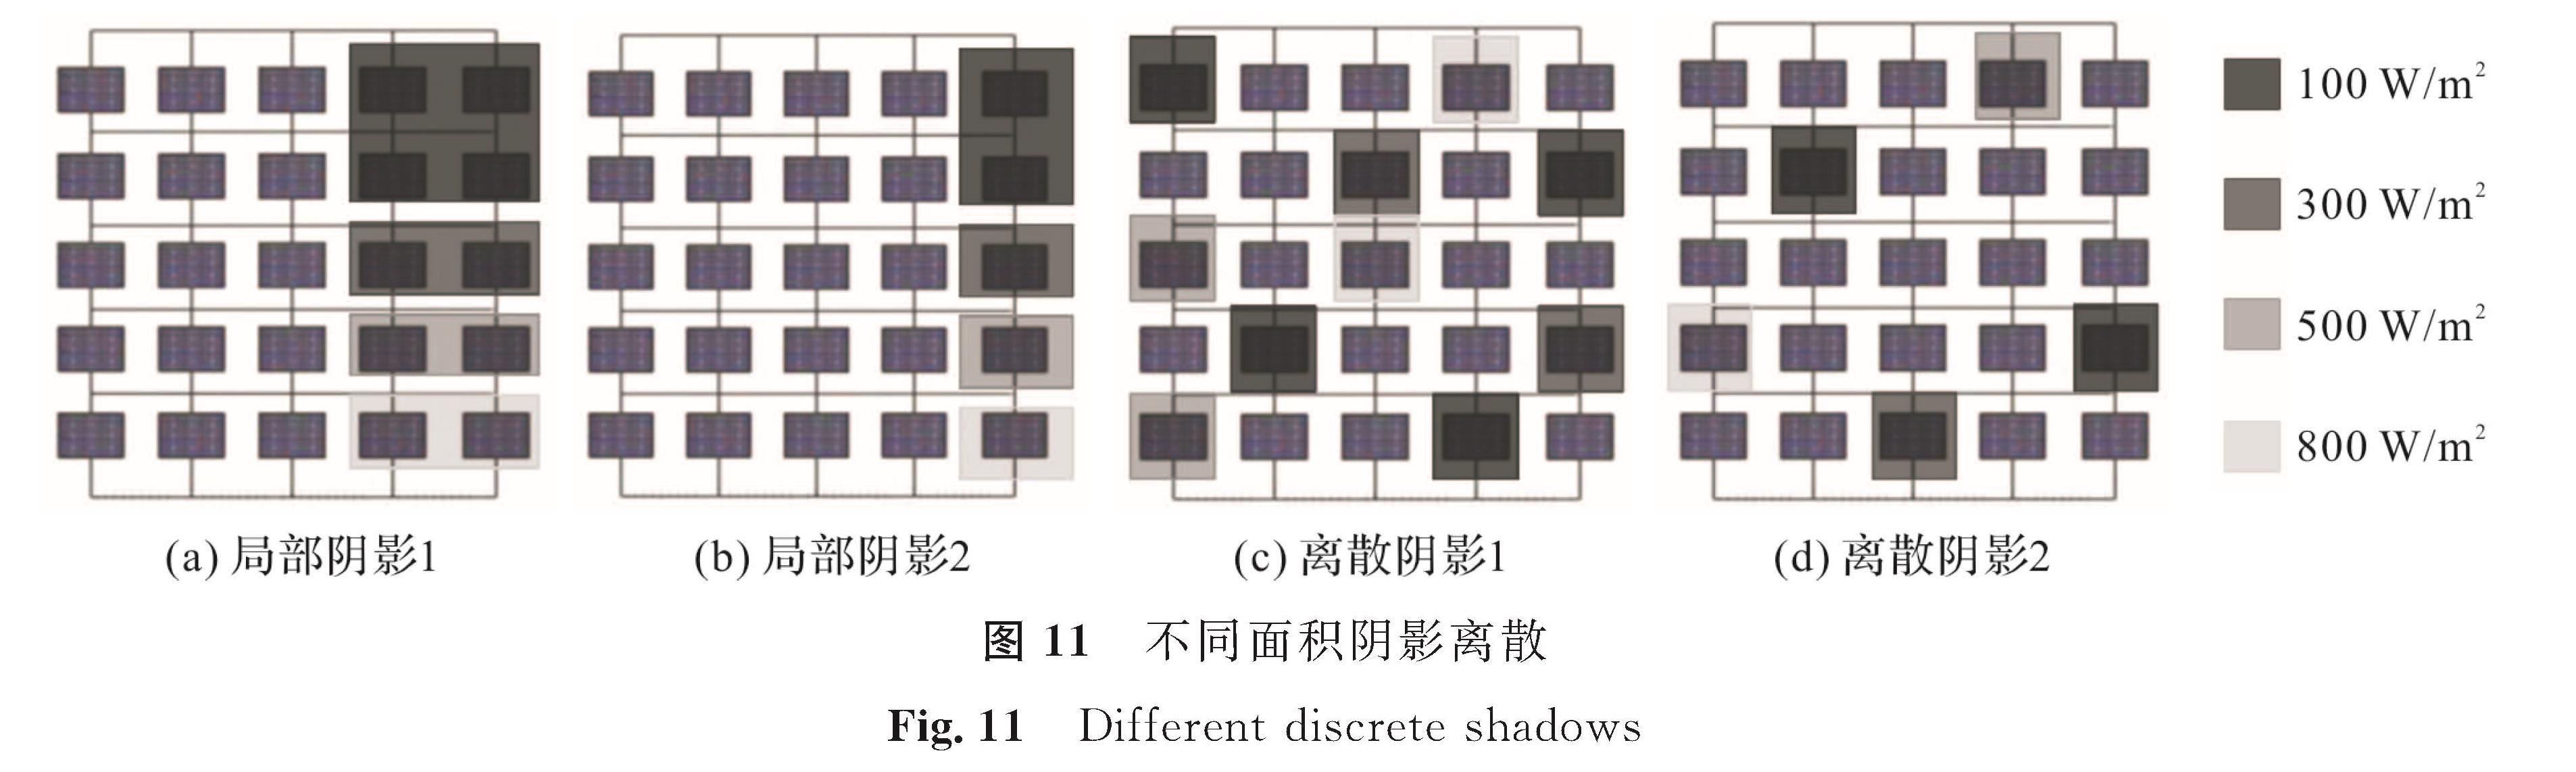 图 11 不同面积阴影离散<br/>Fig.11 Different discrete shadows